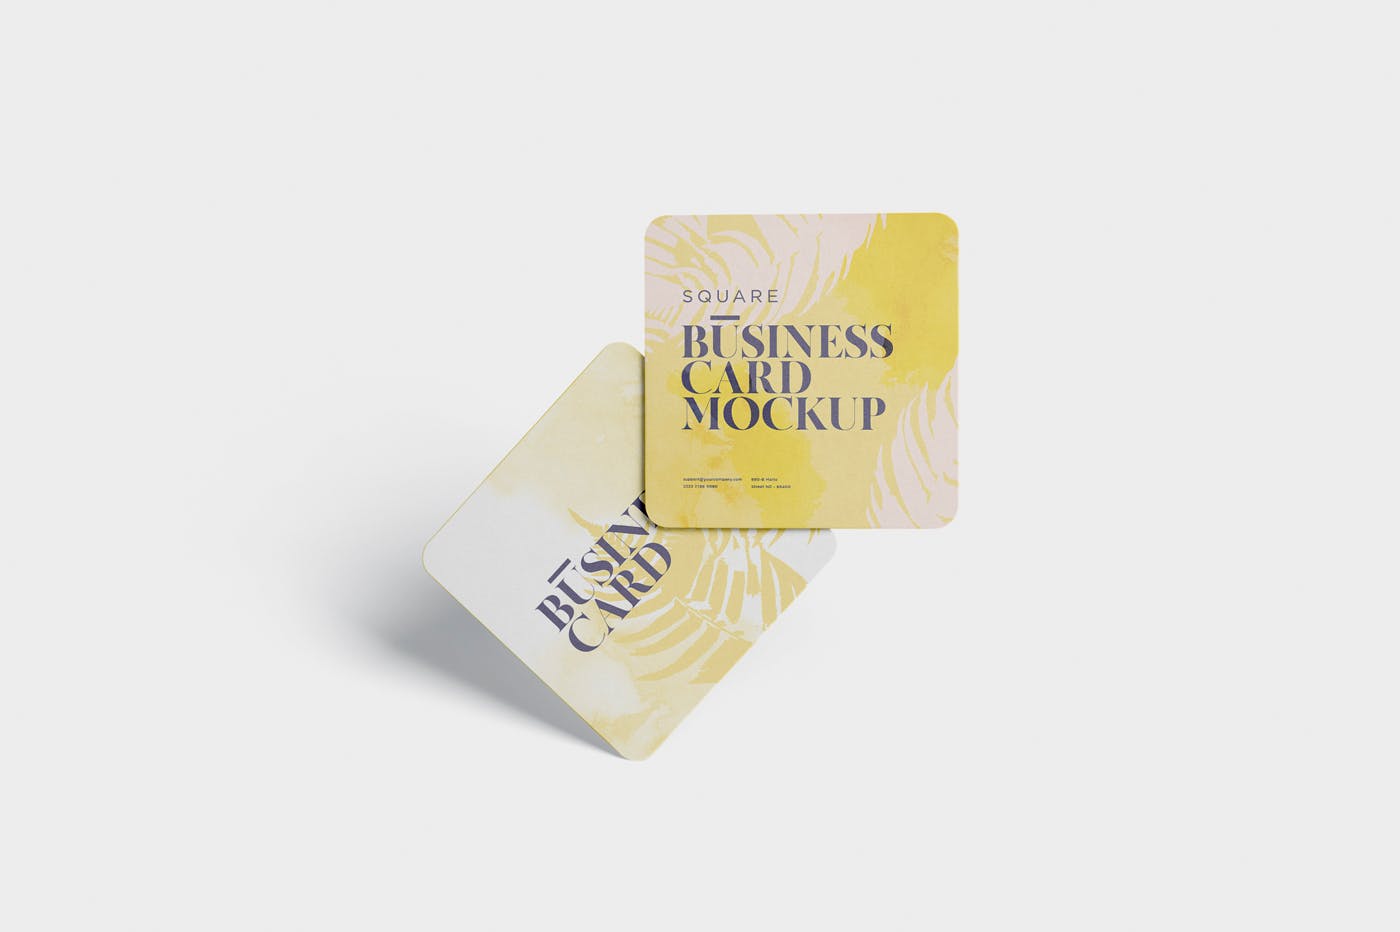 圆角设计风格企业名片效果图普贤居精选 Business Card Mockup – Square Round Corner插图(2)